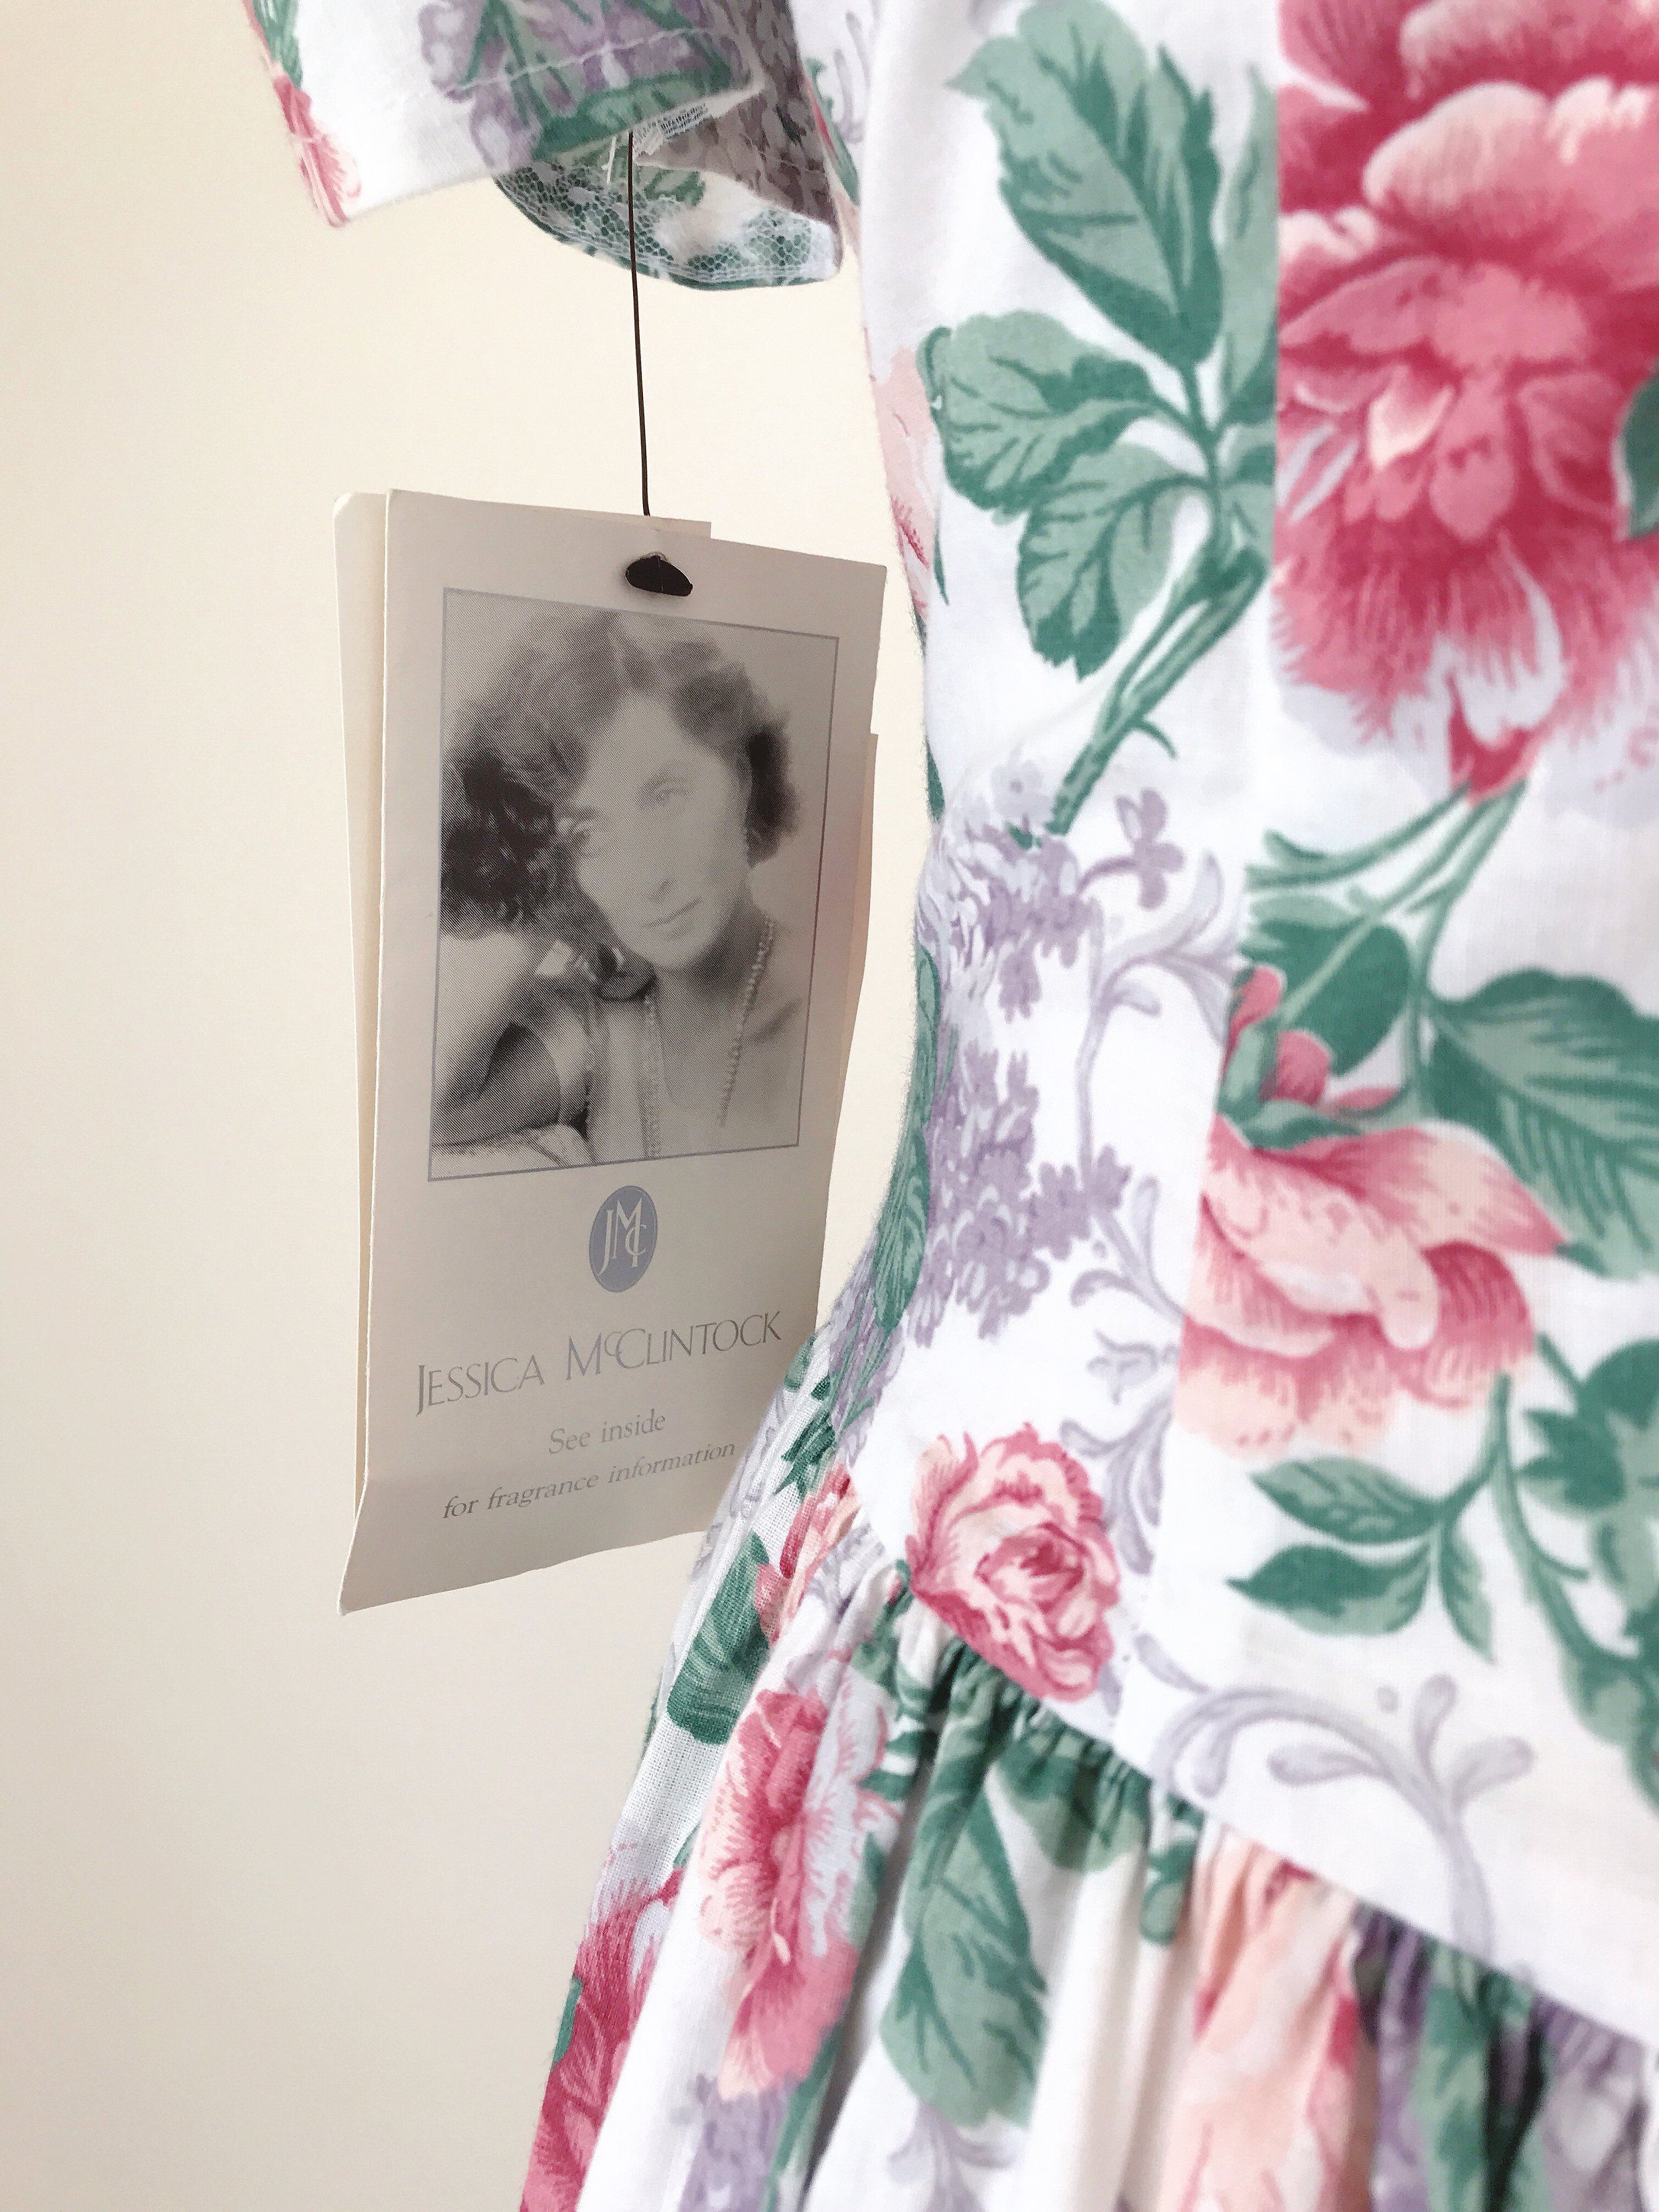 Gunne Sax Jessica McClintock Dress 7/8 Pink Wedding Gown Flocked Skirt  Corset | eBay